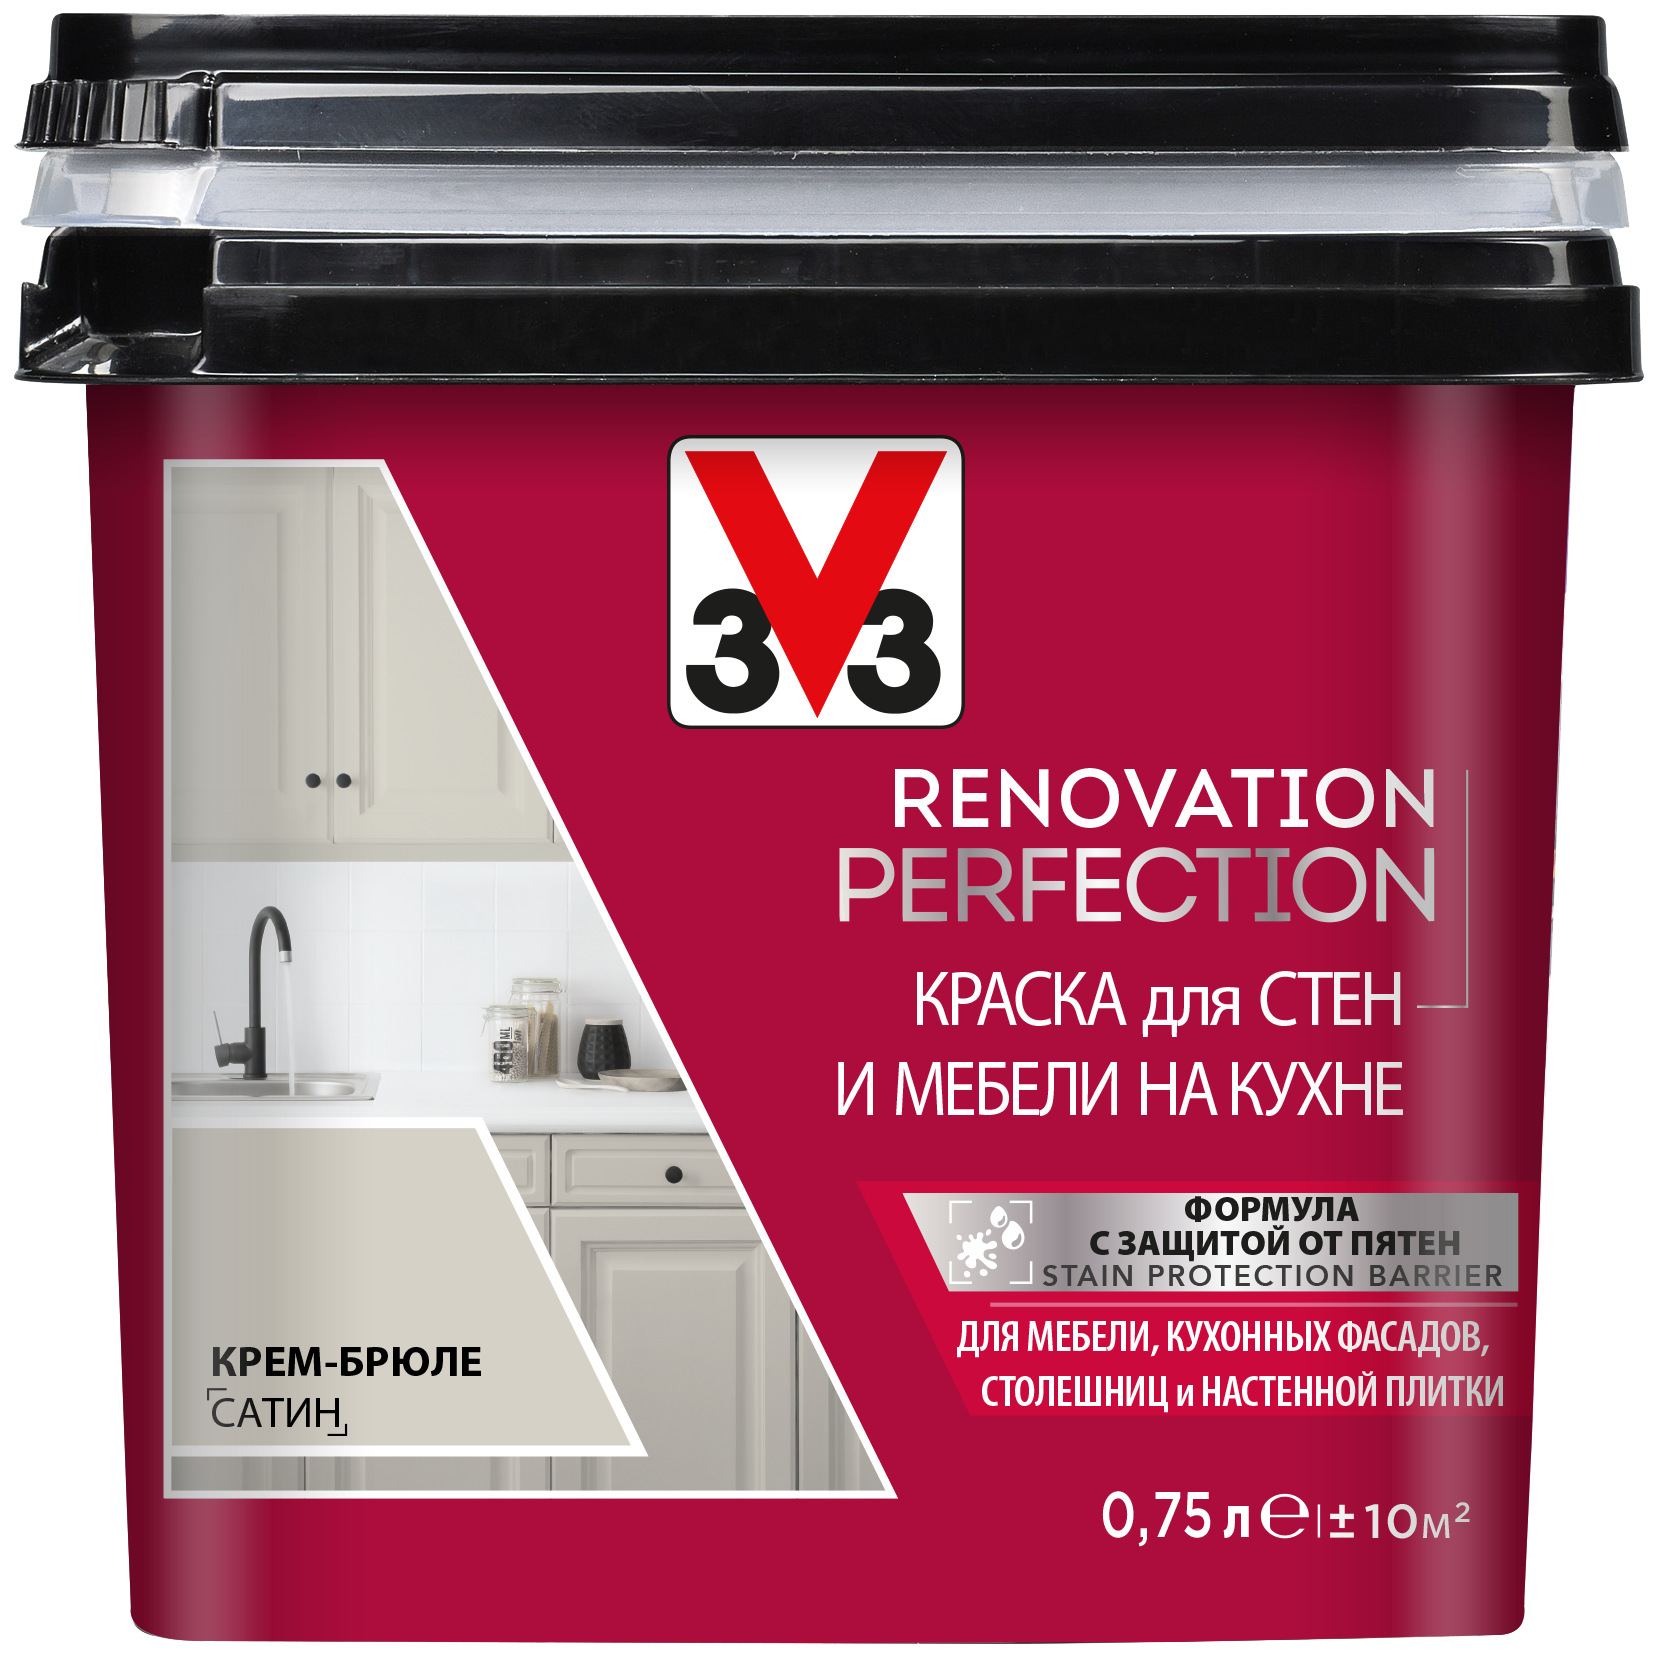 Краска акриловая V33 Renovation Perfection для стен и мебели на кухне влагостойкая моющаяся полуматовая